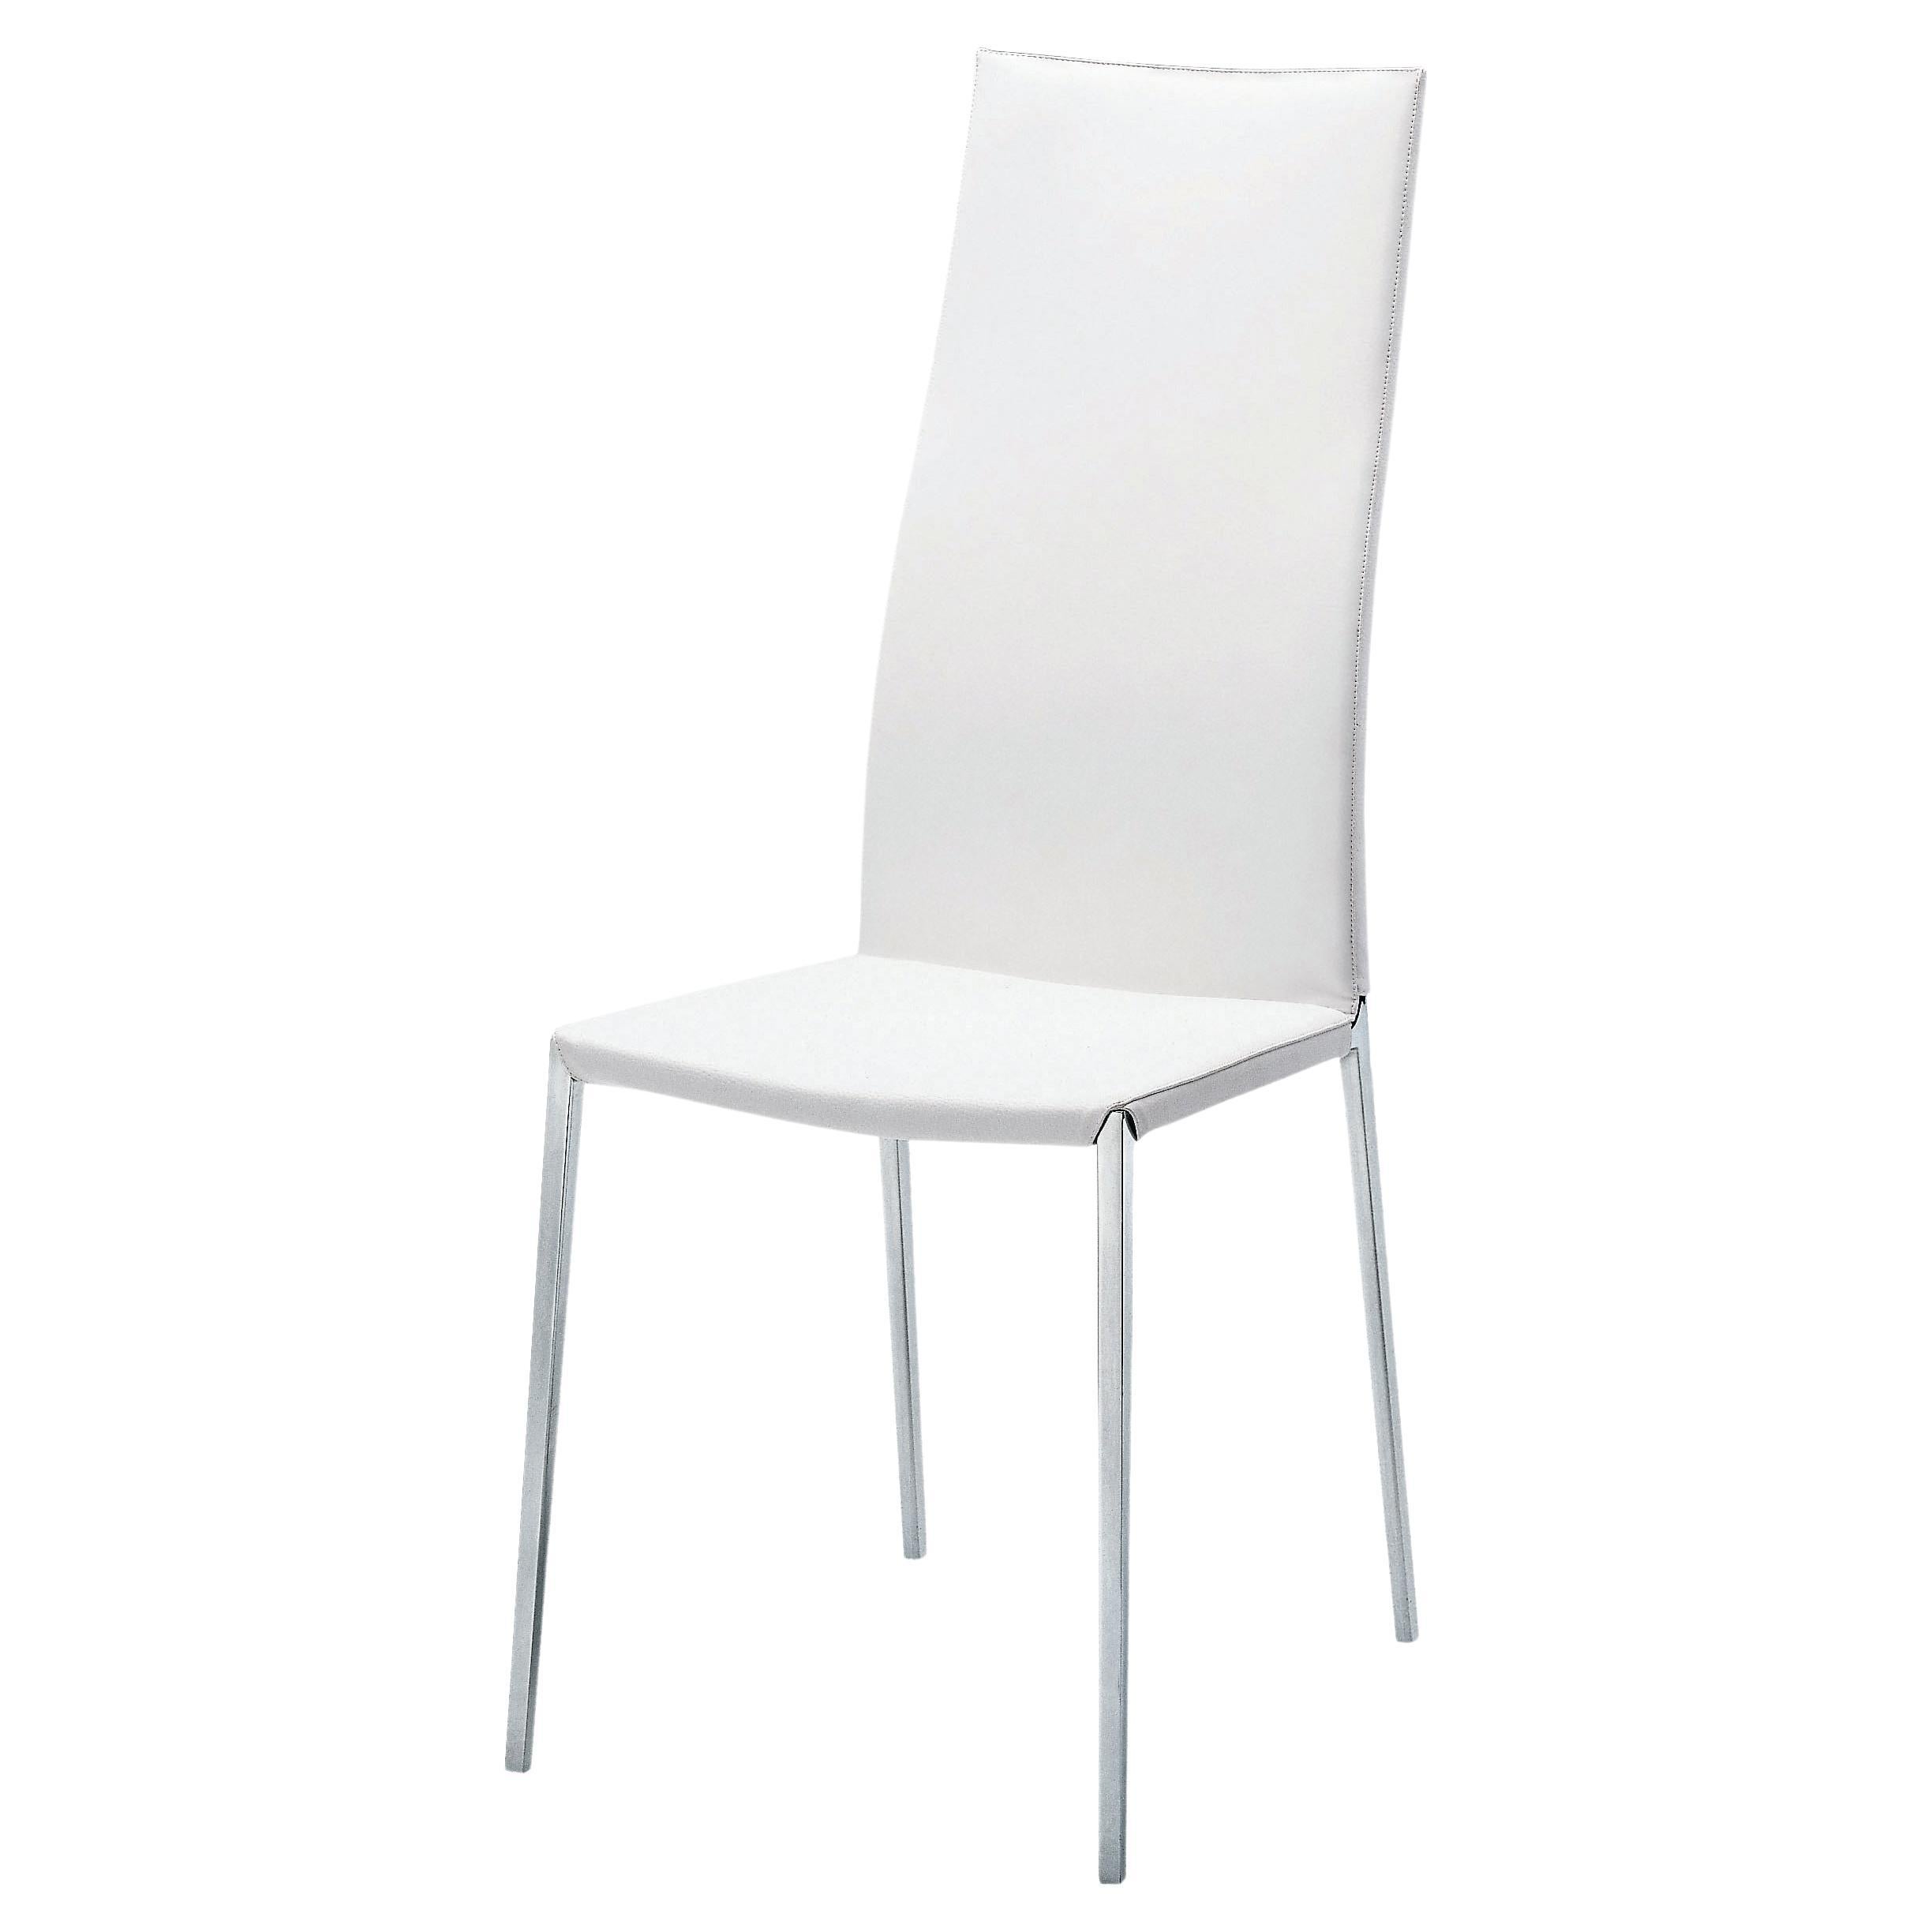 Zanotta Lialta-Stuhl mit weißer Polsterung und Rahmen aus poliertem Aluminium